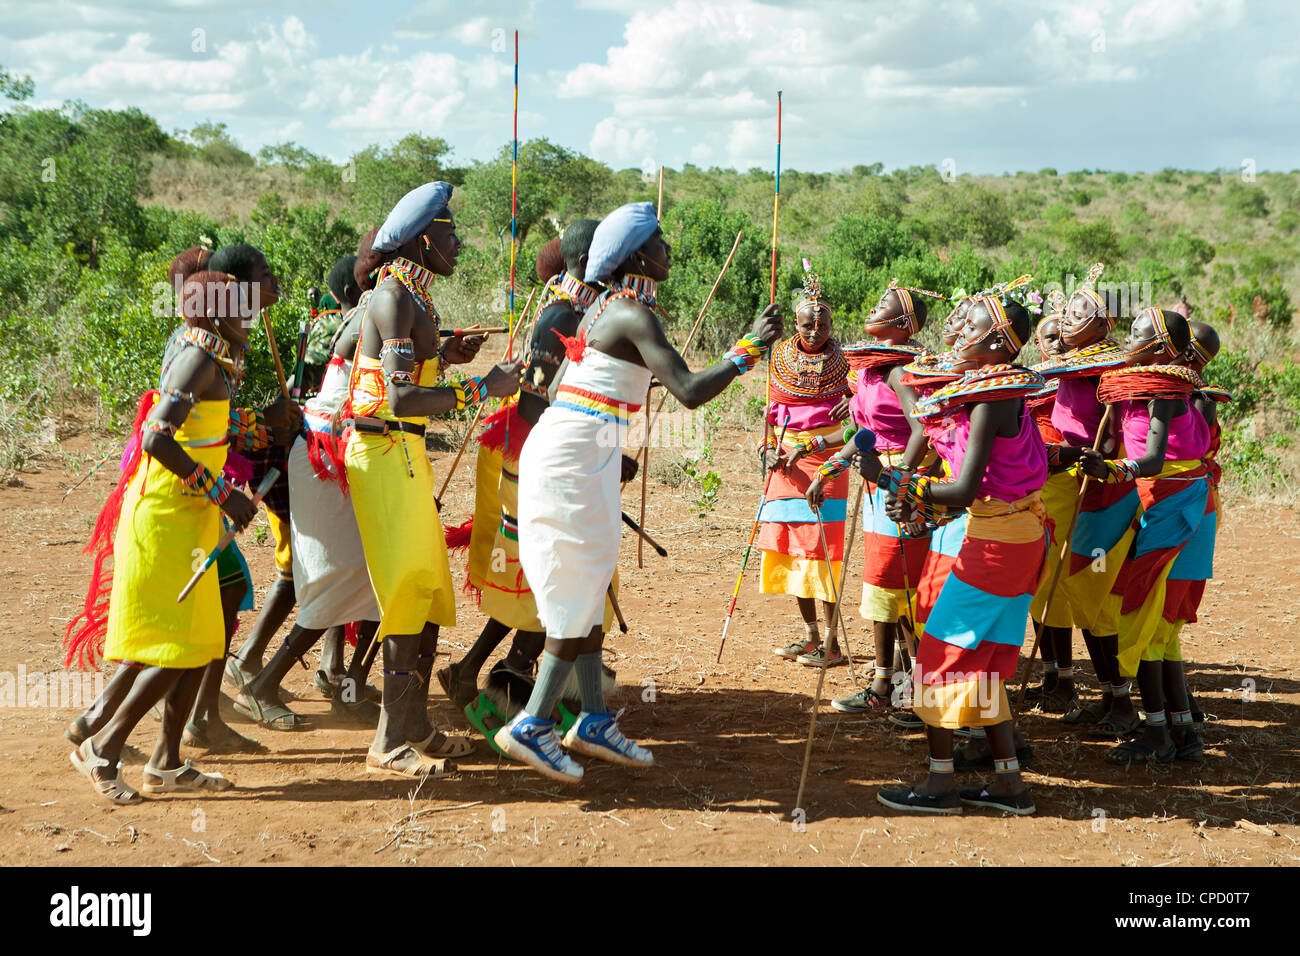 Samburu Masai warrior men and women jumping in traditional Masai Samburu dance Stock Photo